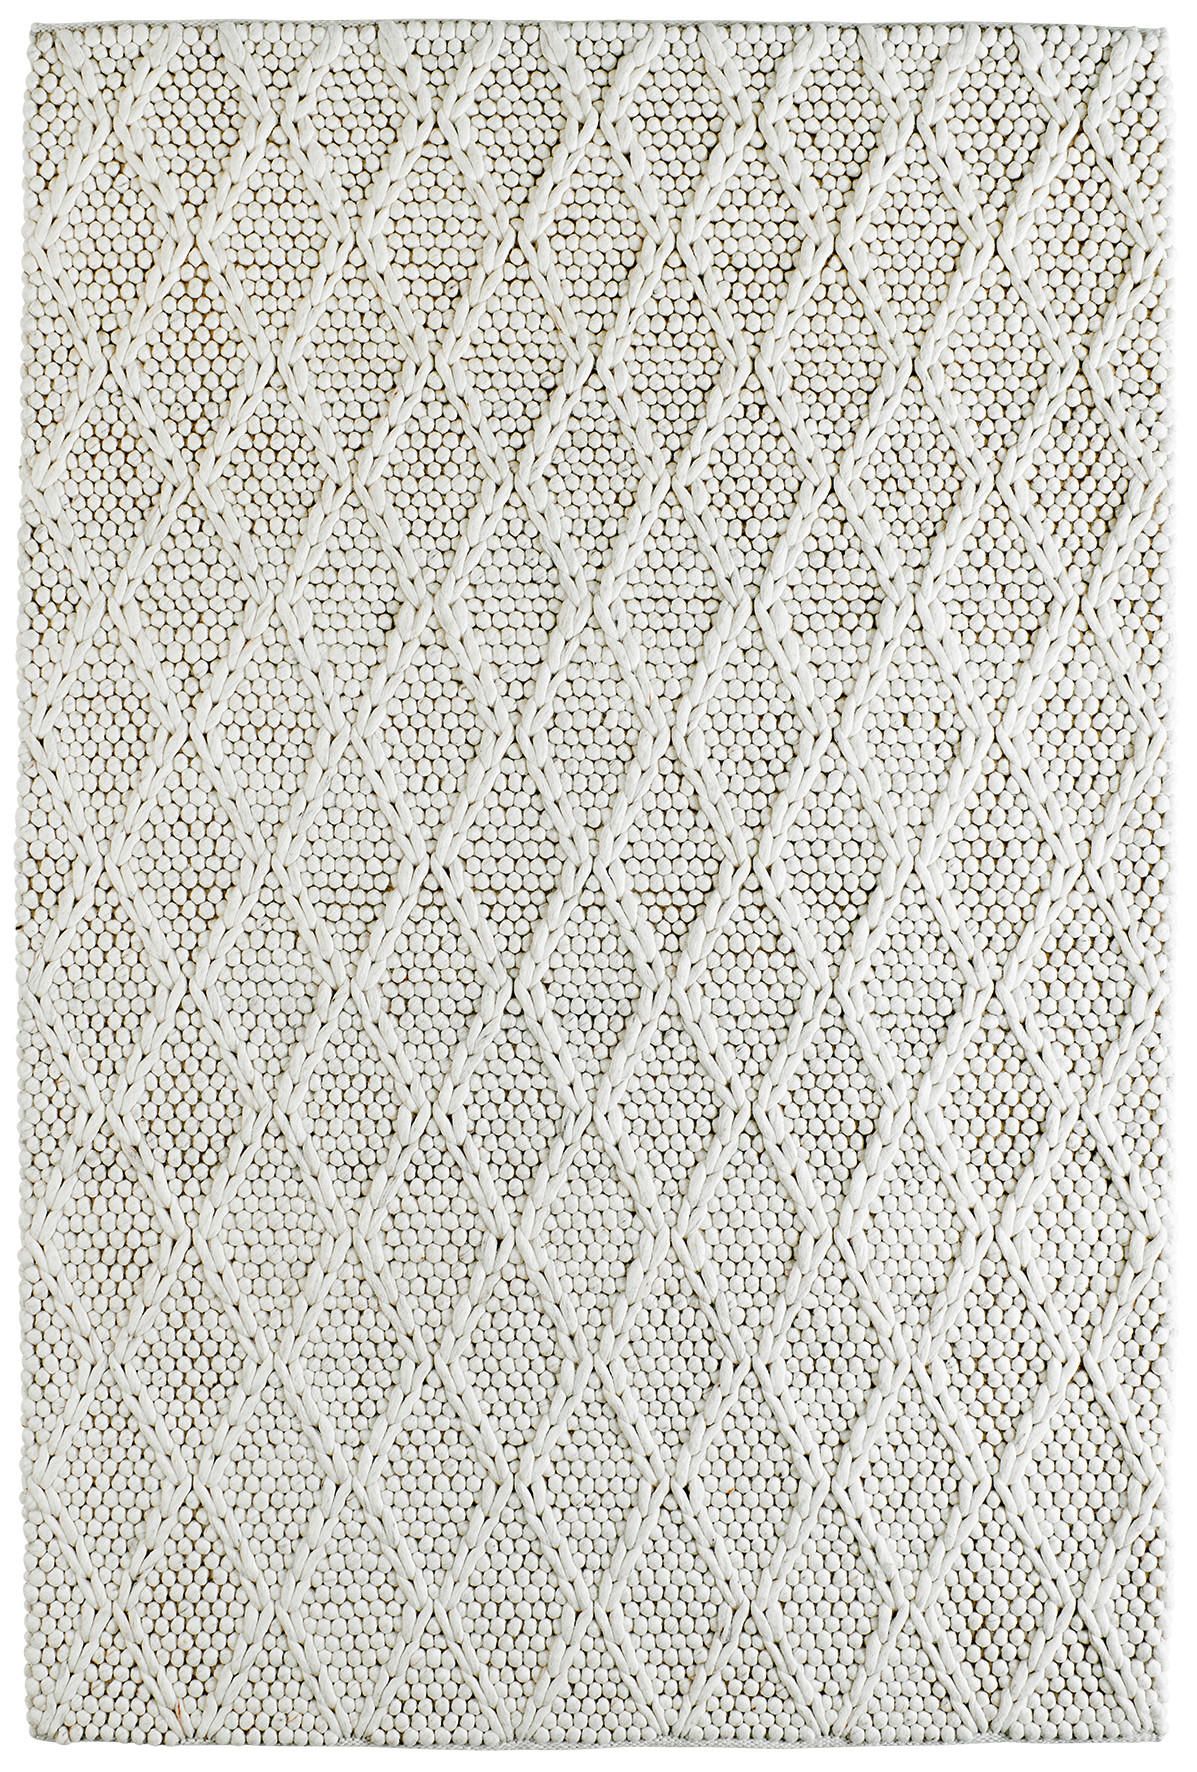 HANDWEBTEPPICH 80/150 cm  - Creme, Design, Textil (80/150cm) - Linea Natura